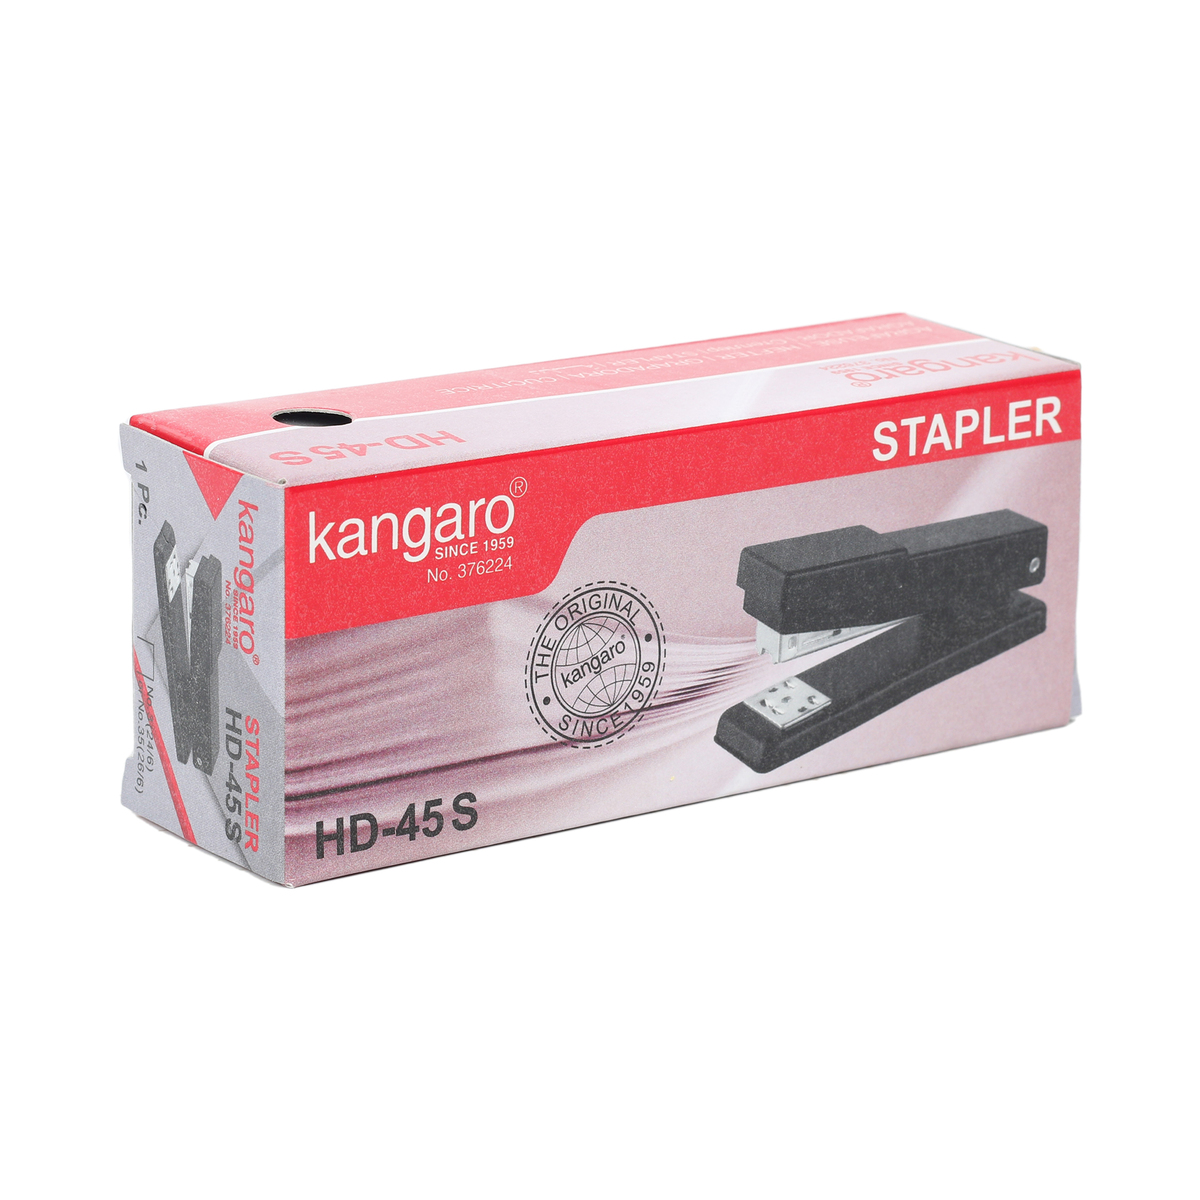 Kangaro Stapler HD-45 S